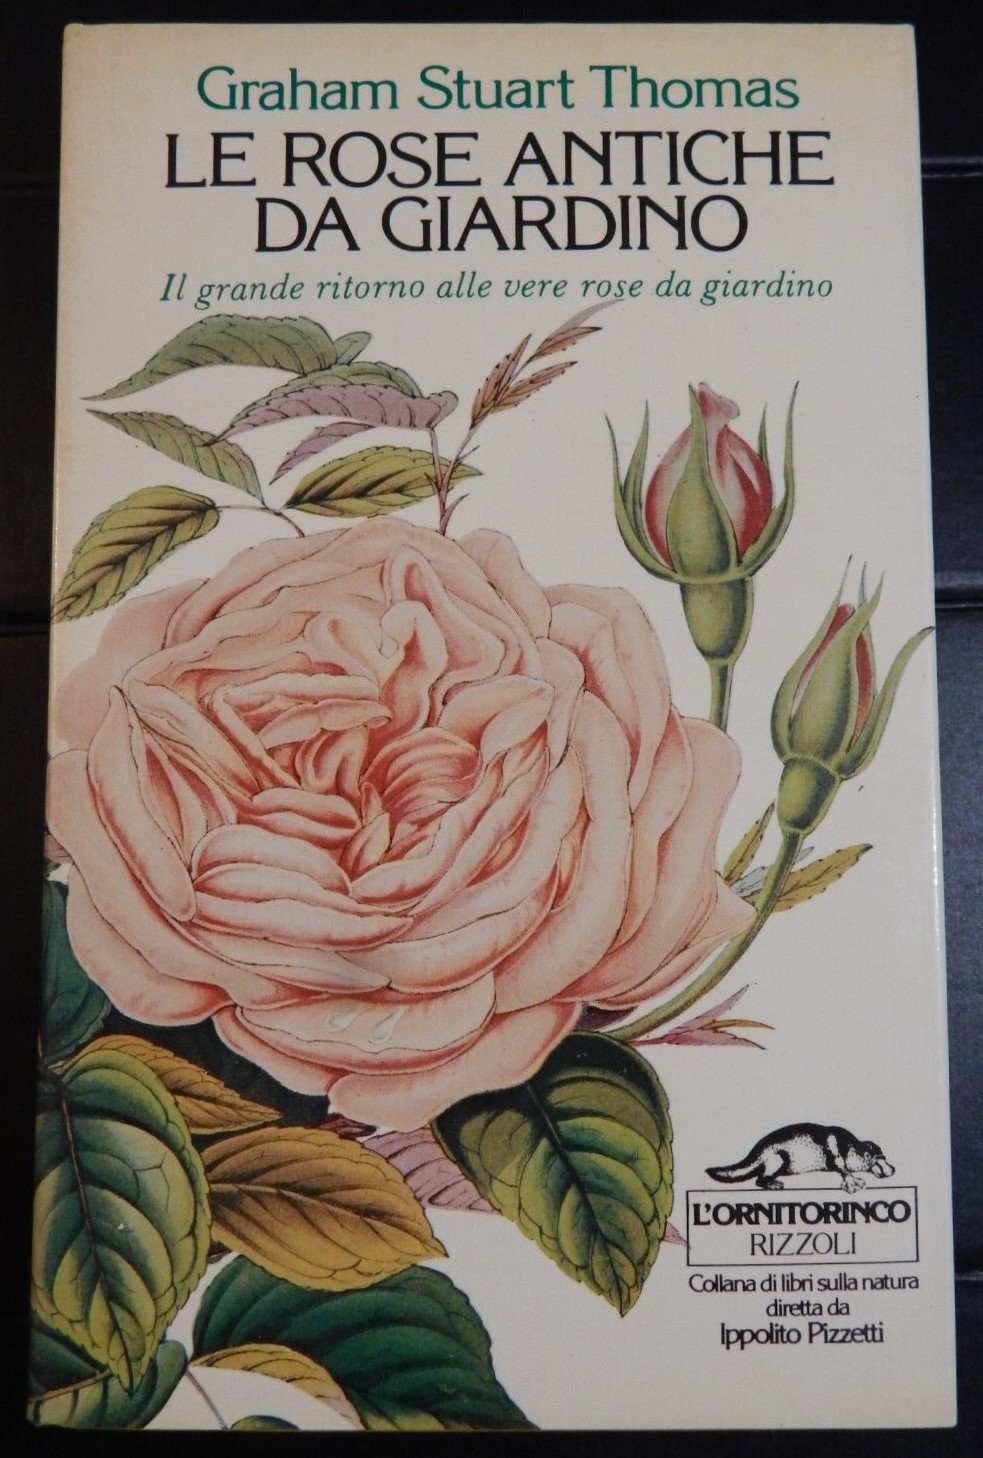 Alla scoperta del libro cult di Graham Stuart Thomas: “Le rose antiche da giardino” (1981) pubblicato nella celebre collana L’ornitorinco